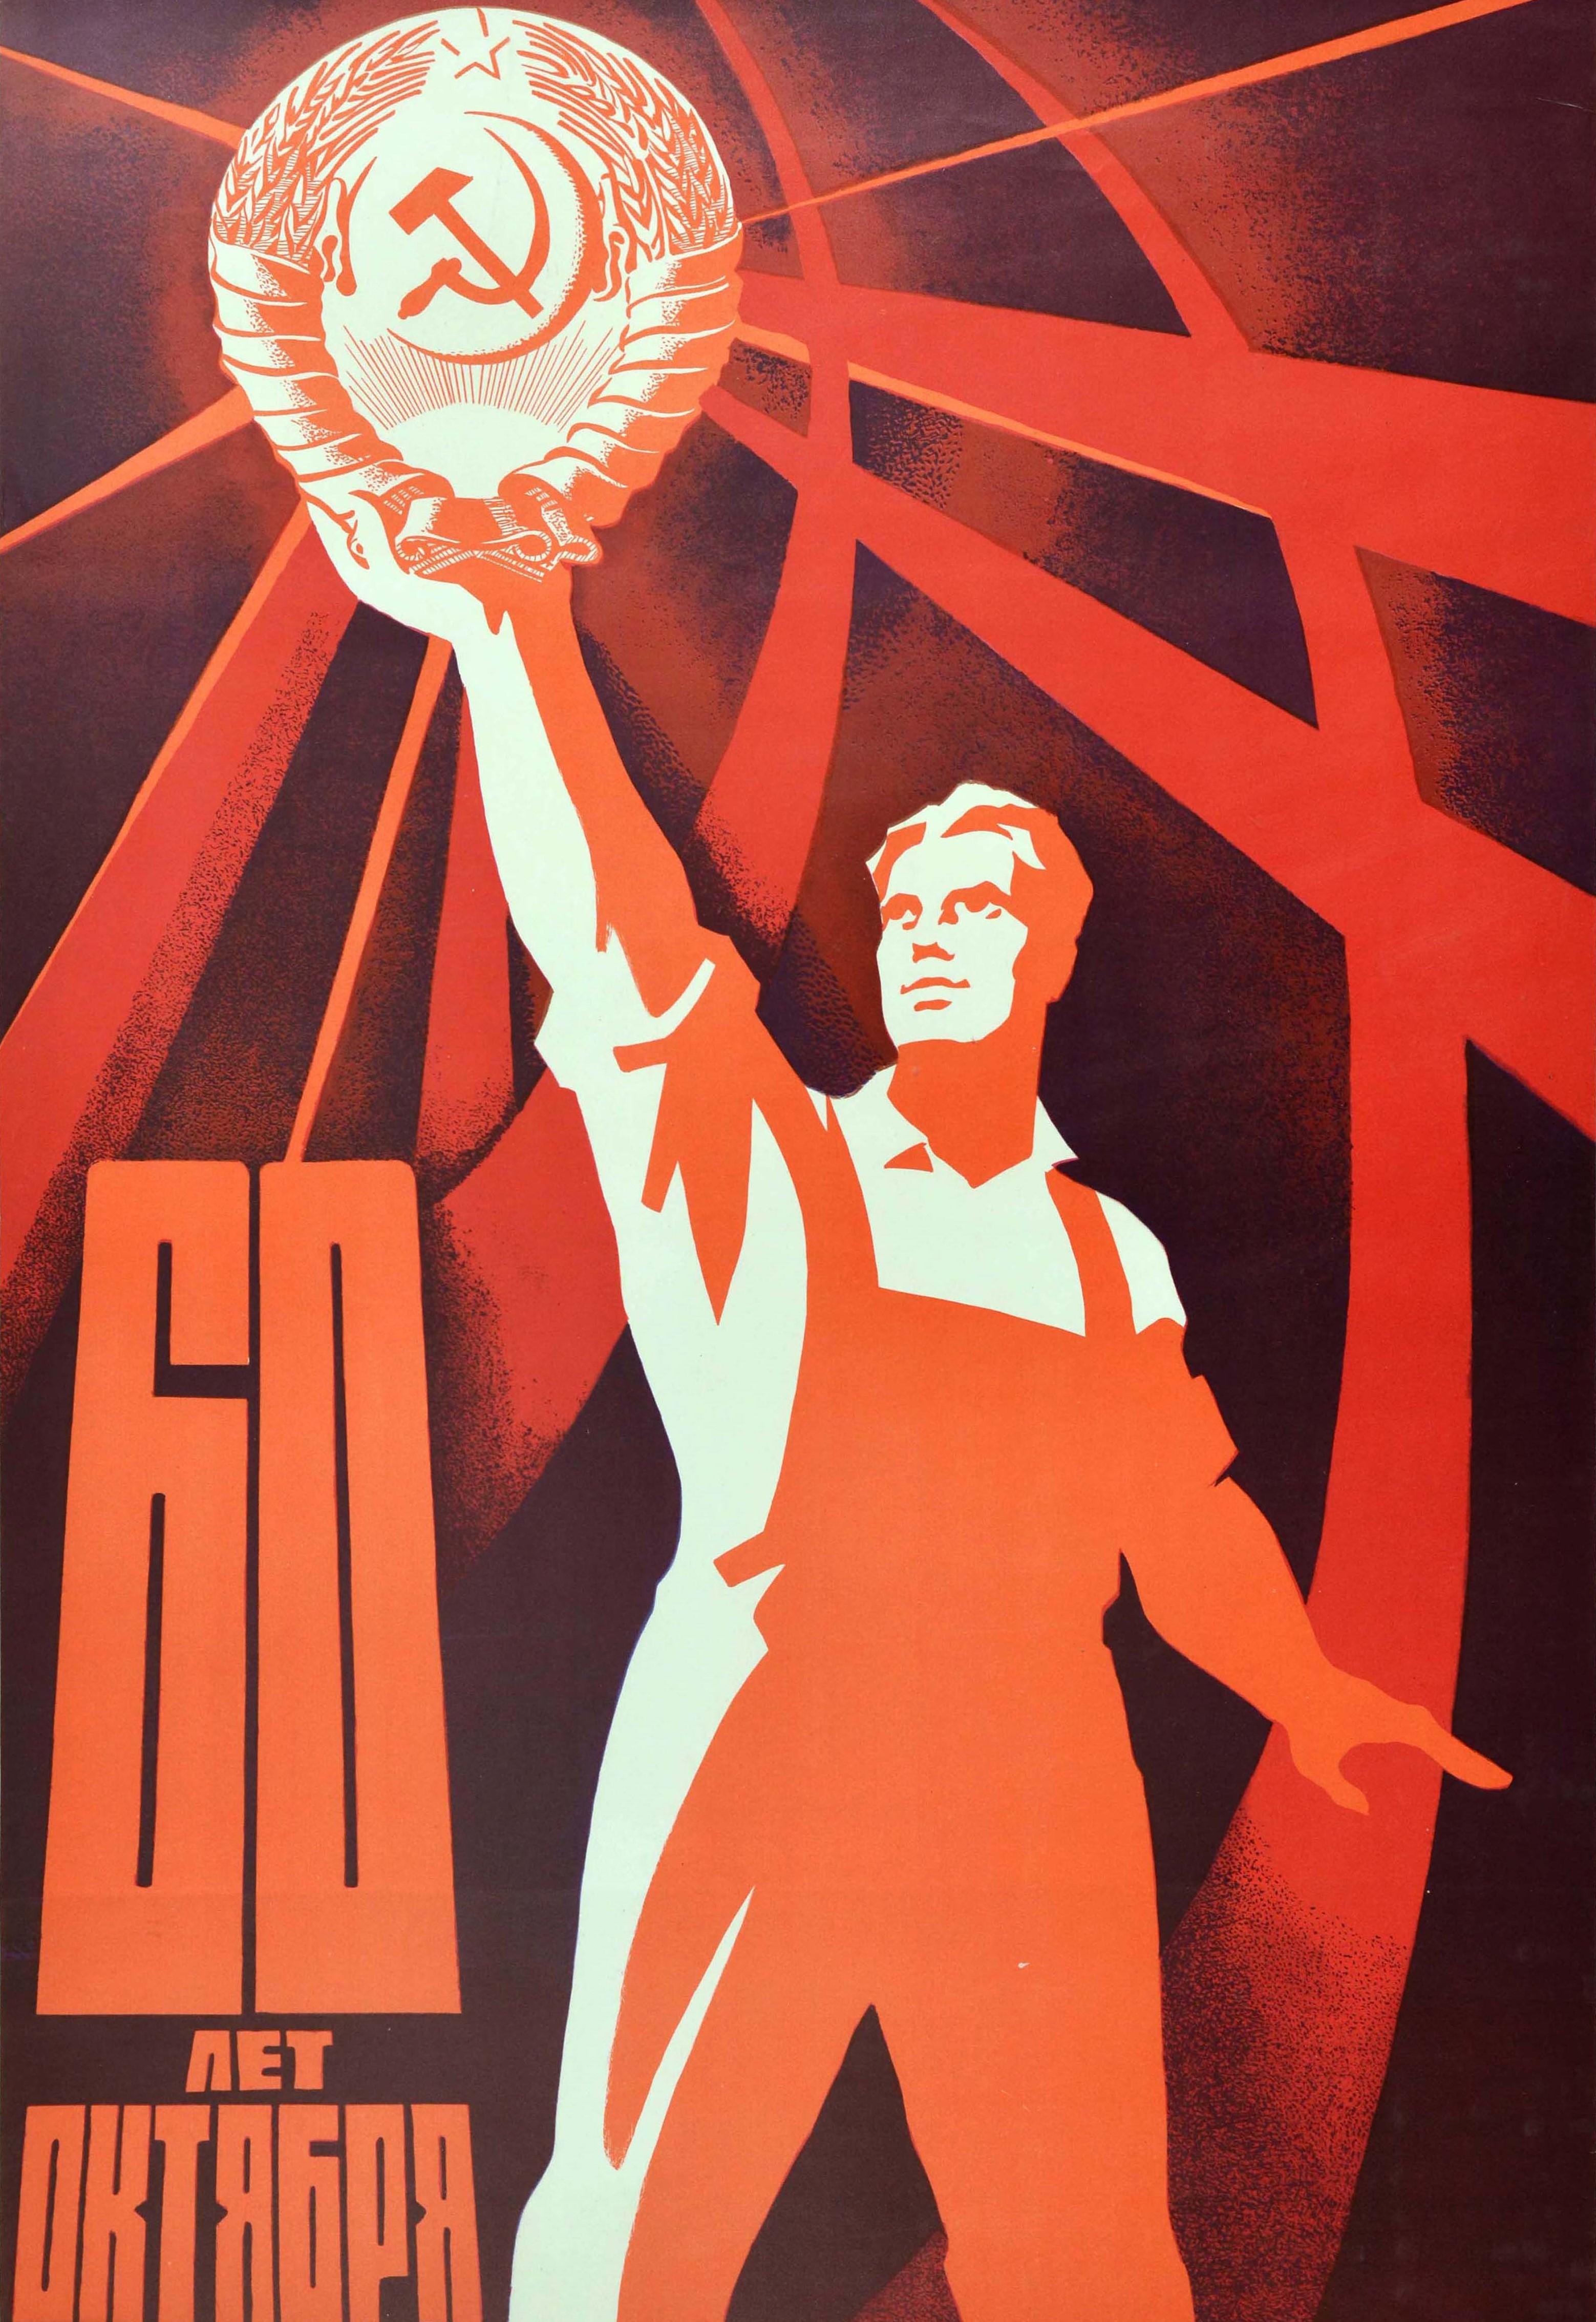 union propaganda posters